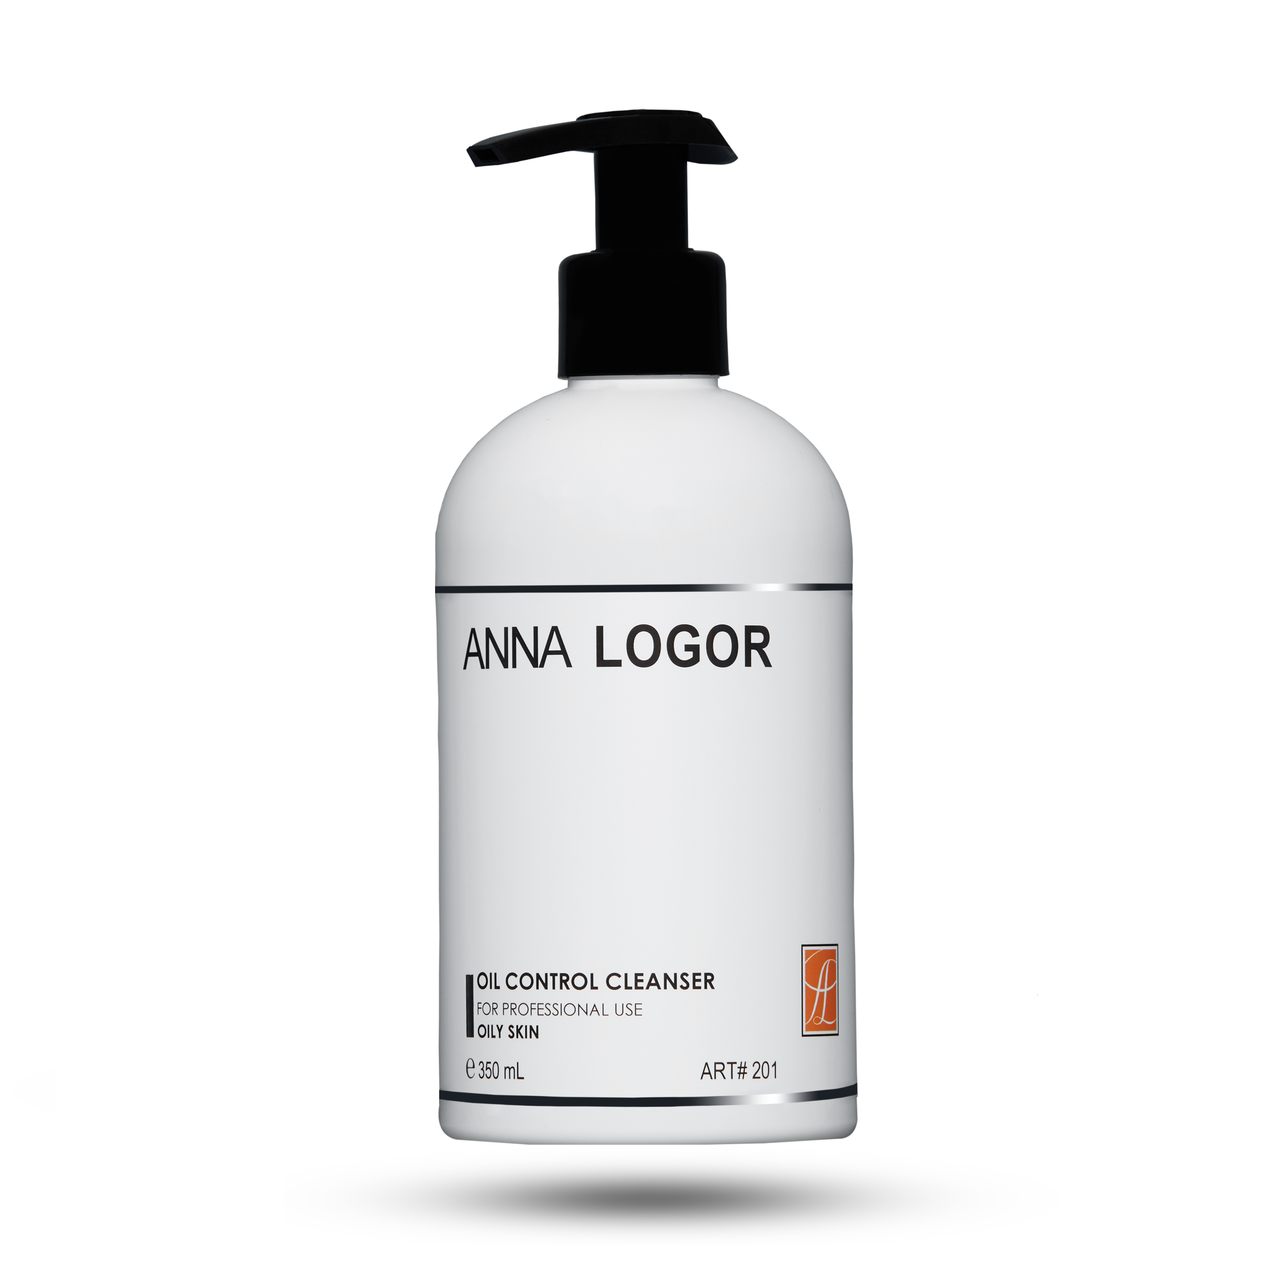 Очищуючий гель для жирної шкіри Art.201 Anna LOGOR Oil Control Cleanser 350 ml